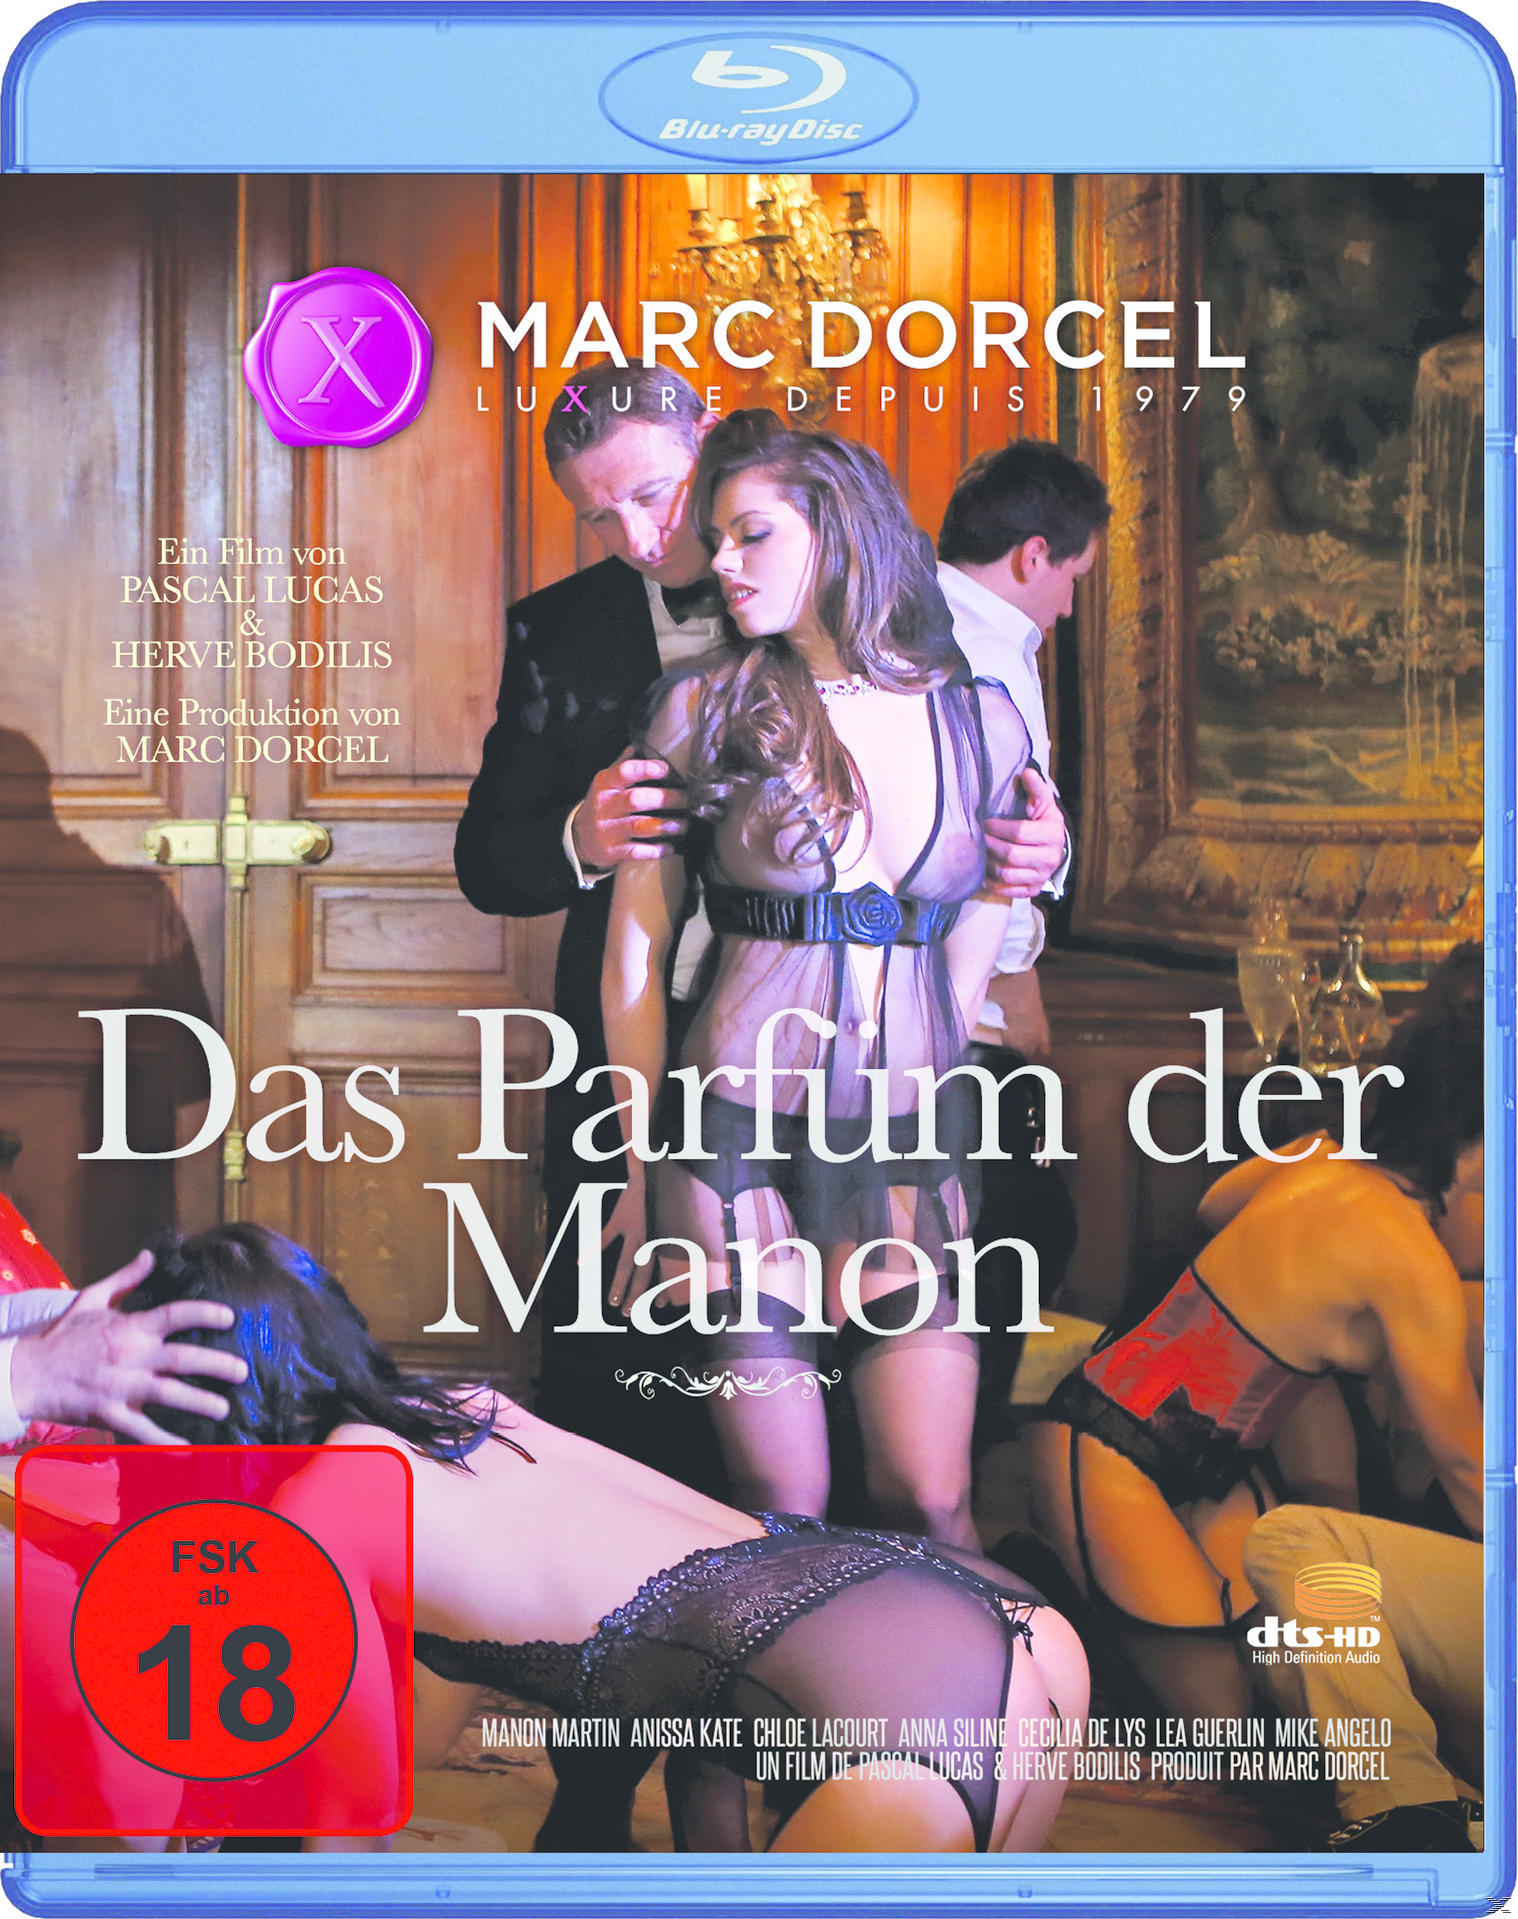 Parfüm Manon Das Blu-ray der